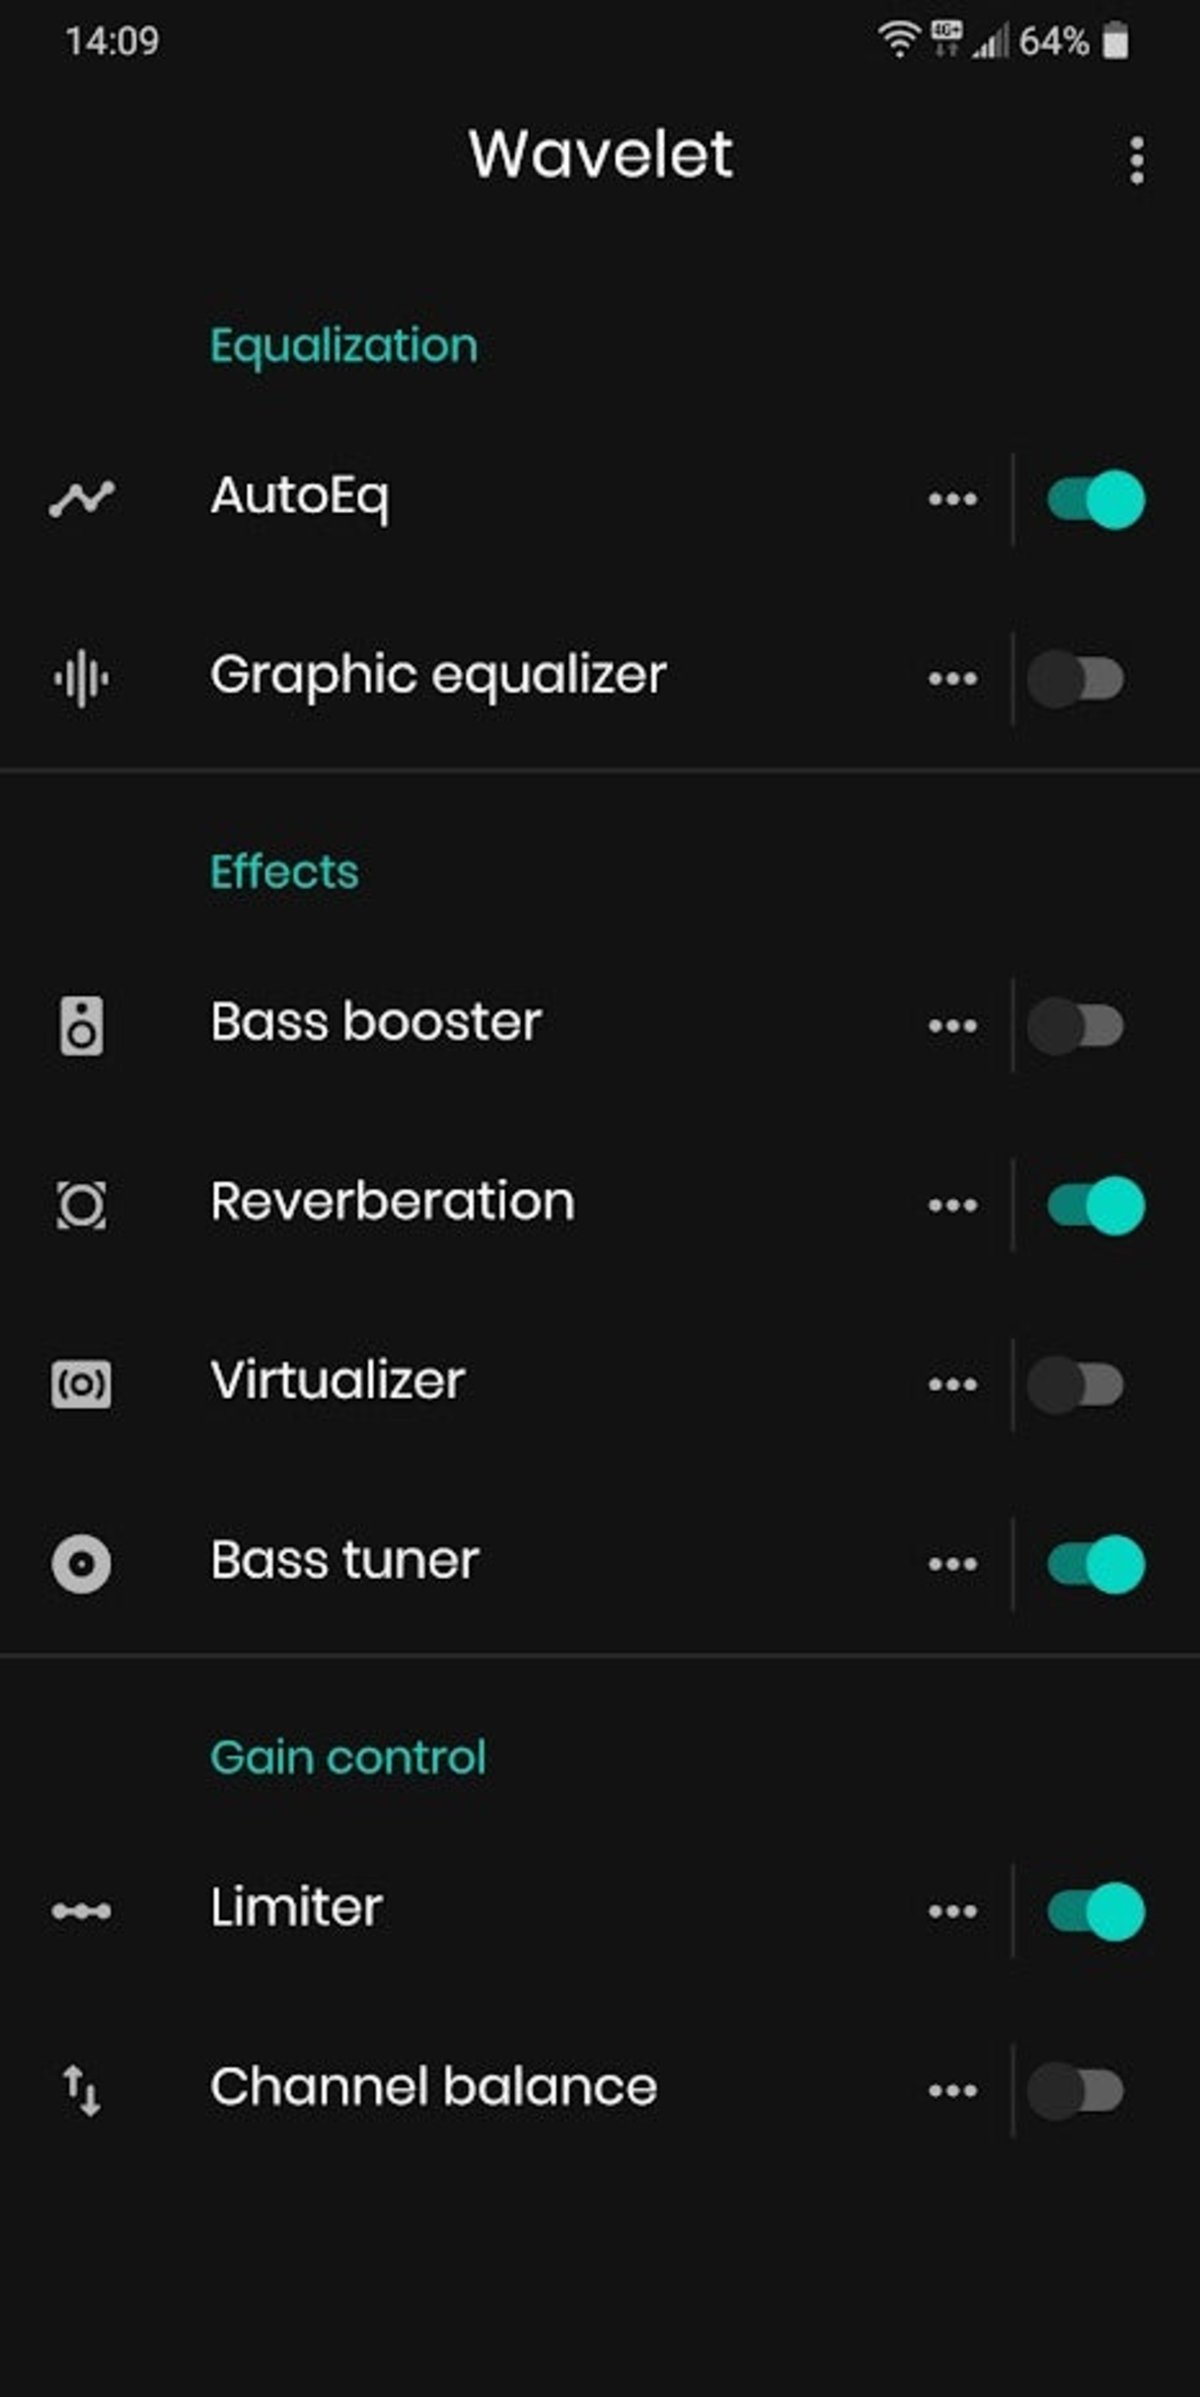 Tus auriculares sonarán mejor con esta app